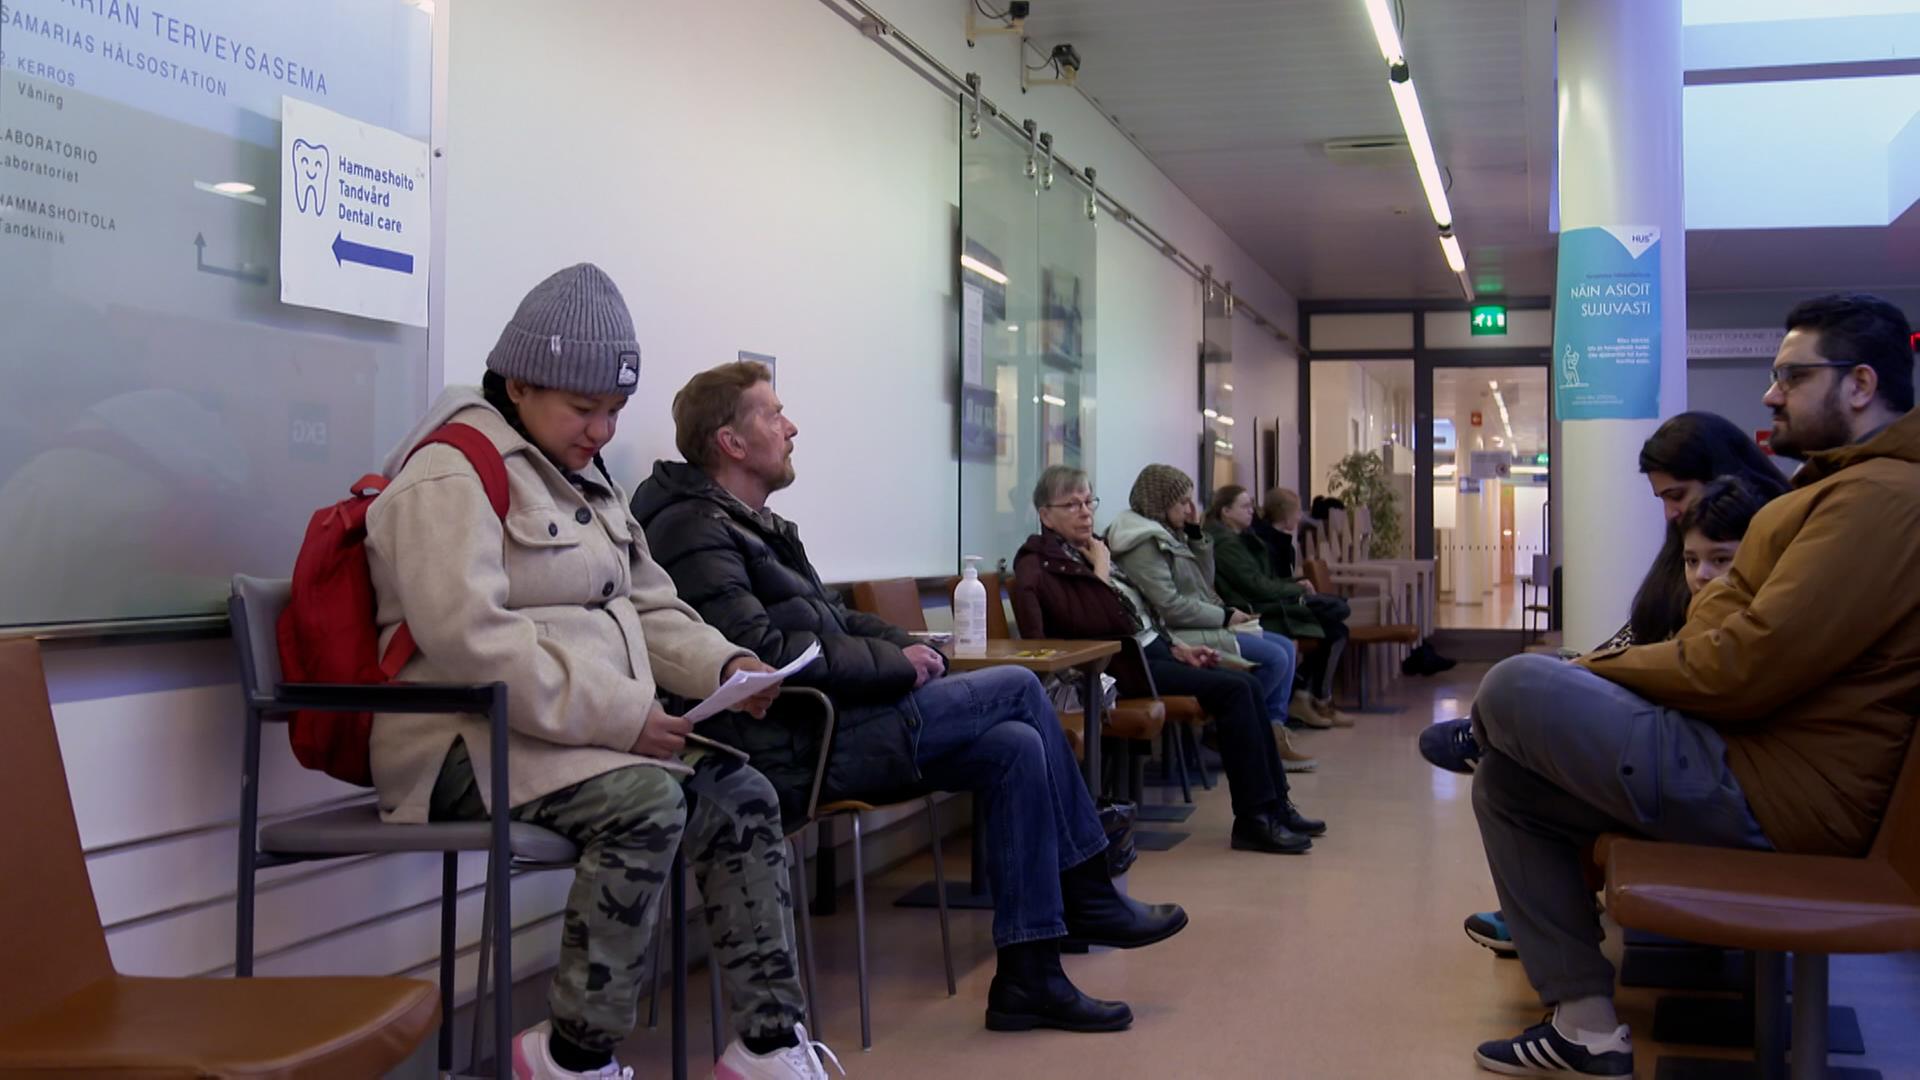 Menschen sitzen in einem gefüllten Warteraum, vermutlich in einem Krankenhaus